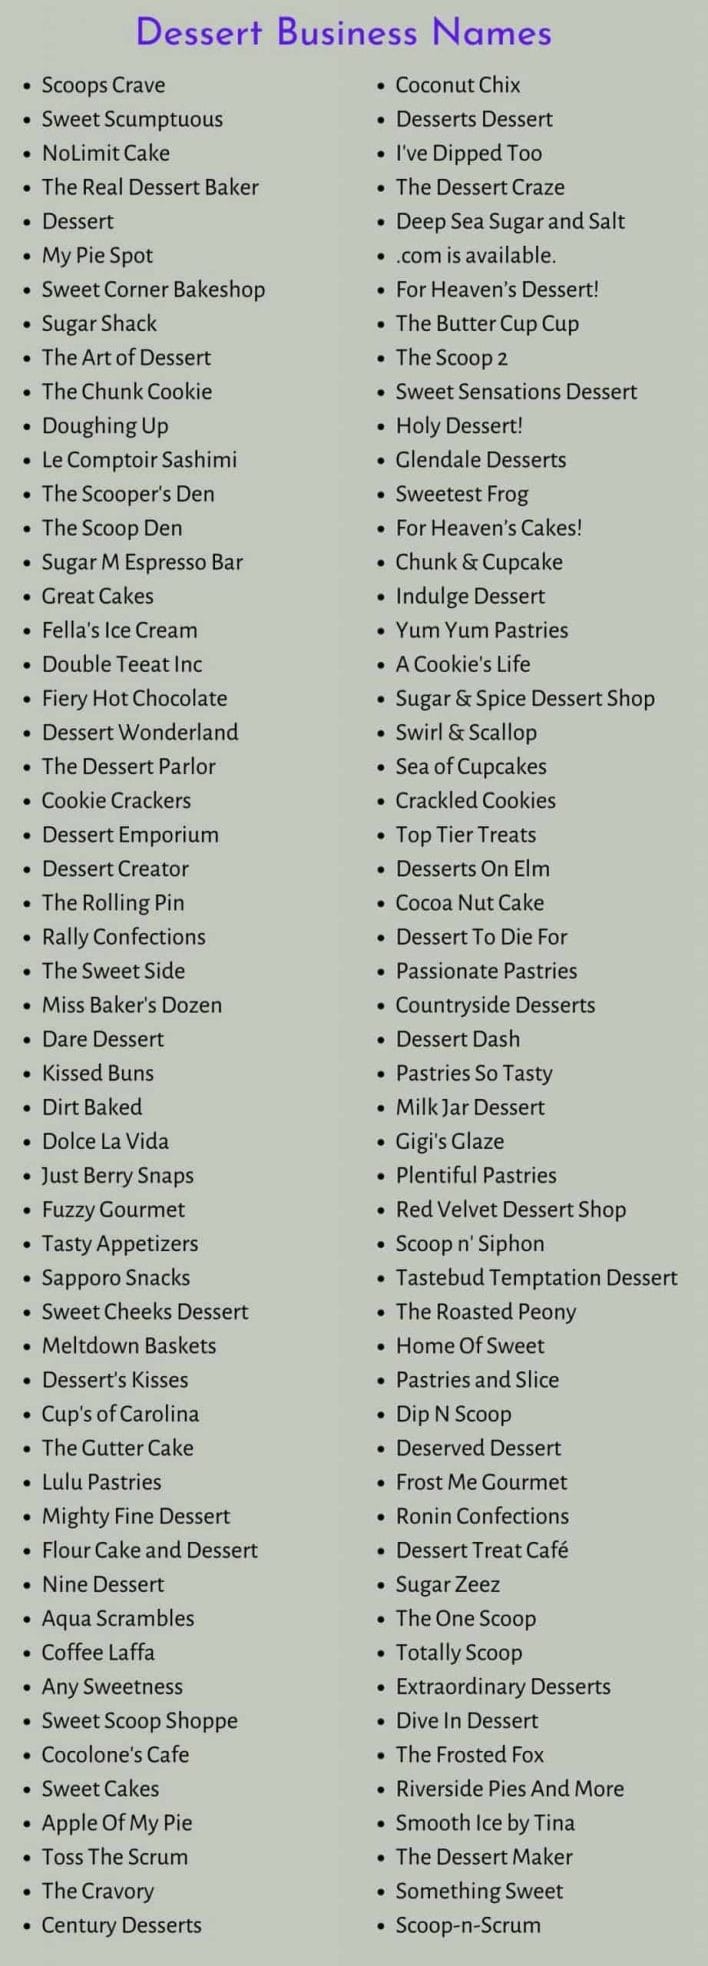 Dessert Business Names